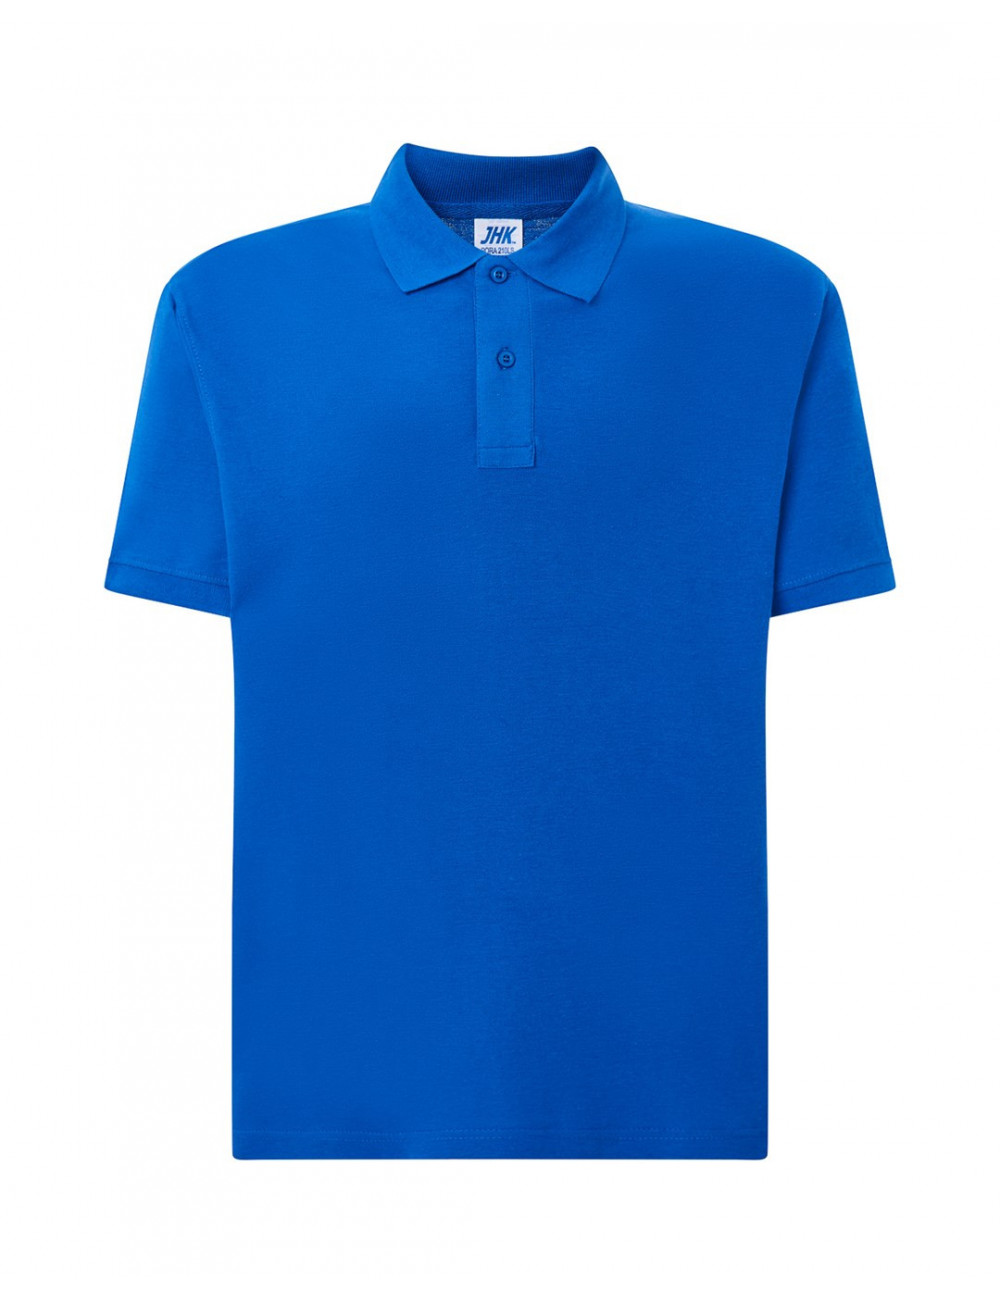 Men`s polo shirts polo pora 210 royal blue Jhk